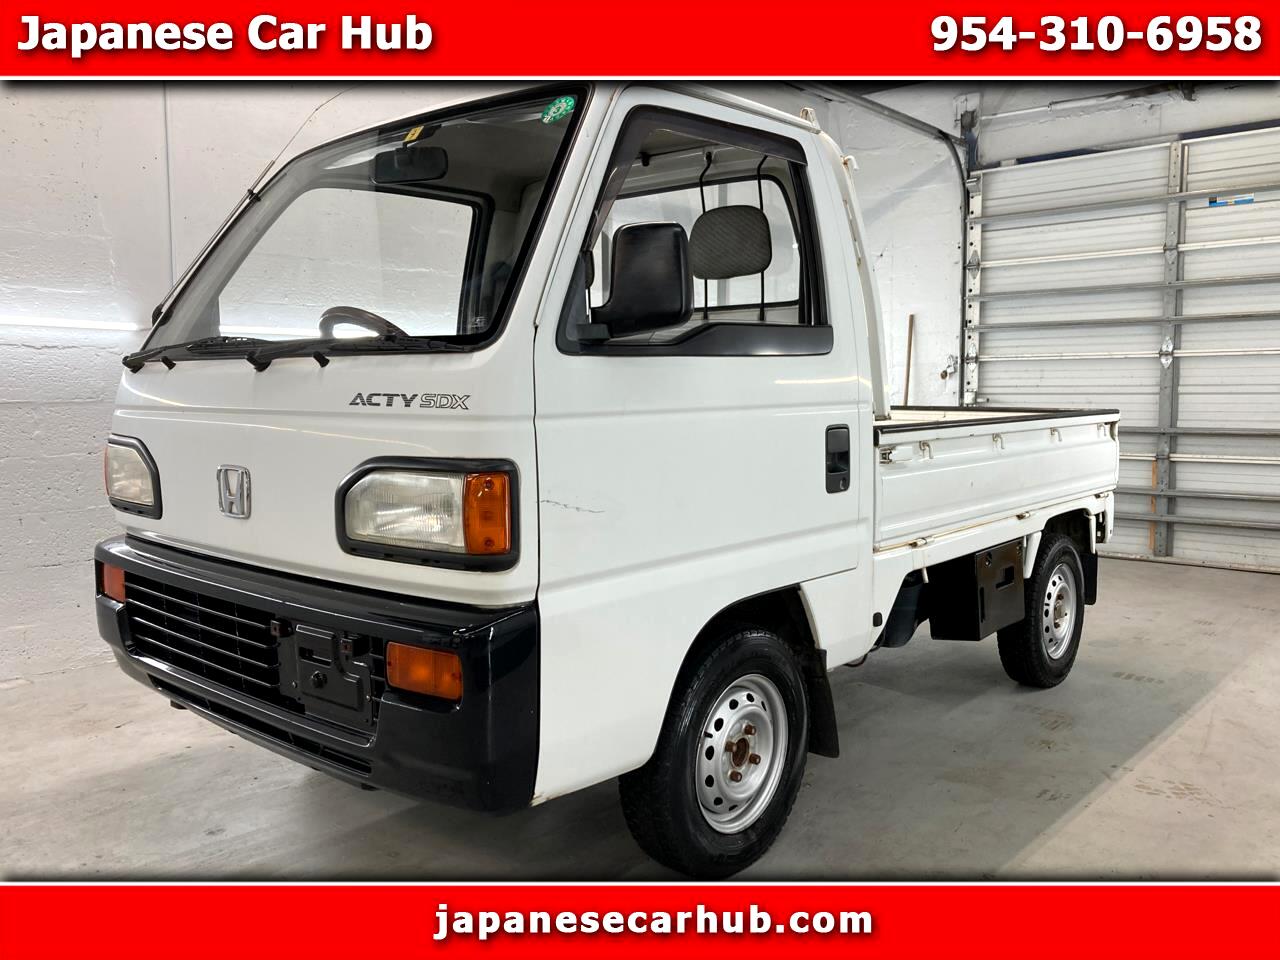 1992 Honda ACTY Kei truck